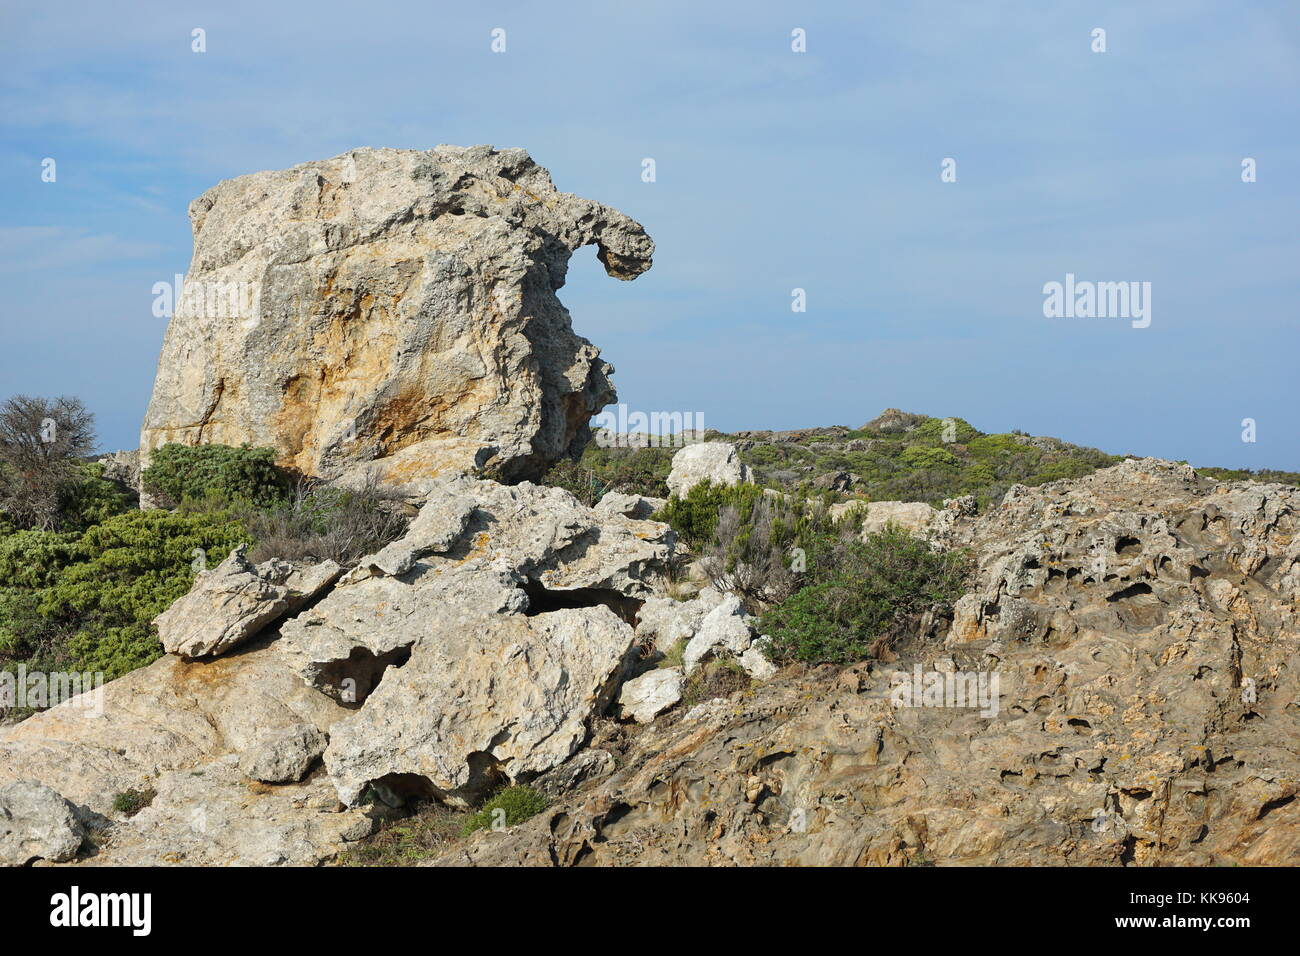 Extraña formación rocosa natural en el parque natural del Cap de Creus, España, Costa Brava, Girona, Cataluña, el Mediterráneo Foto de stock